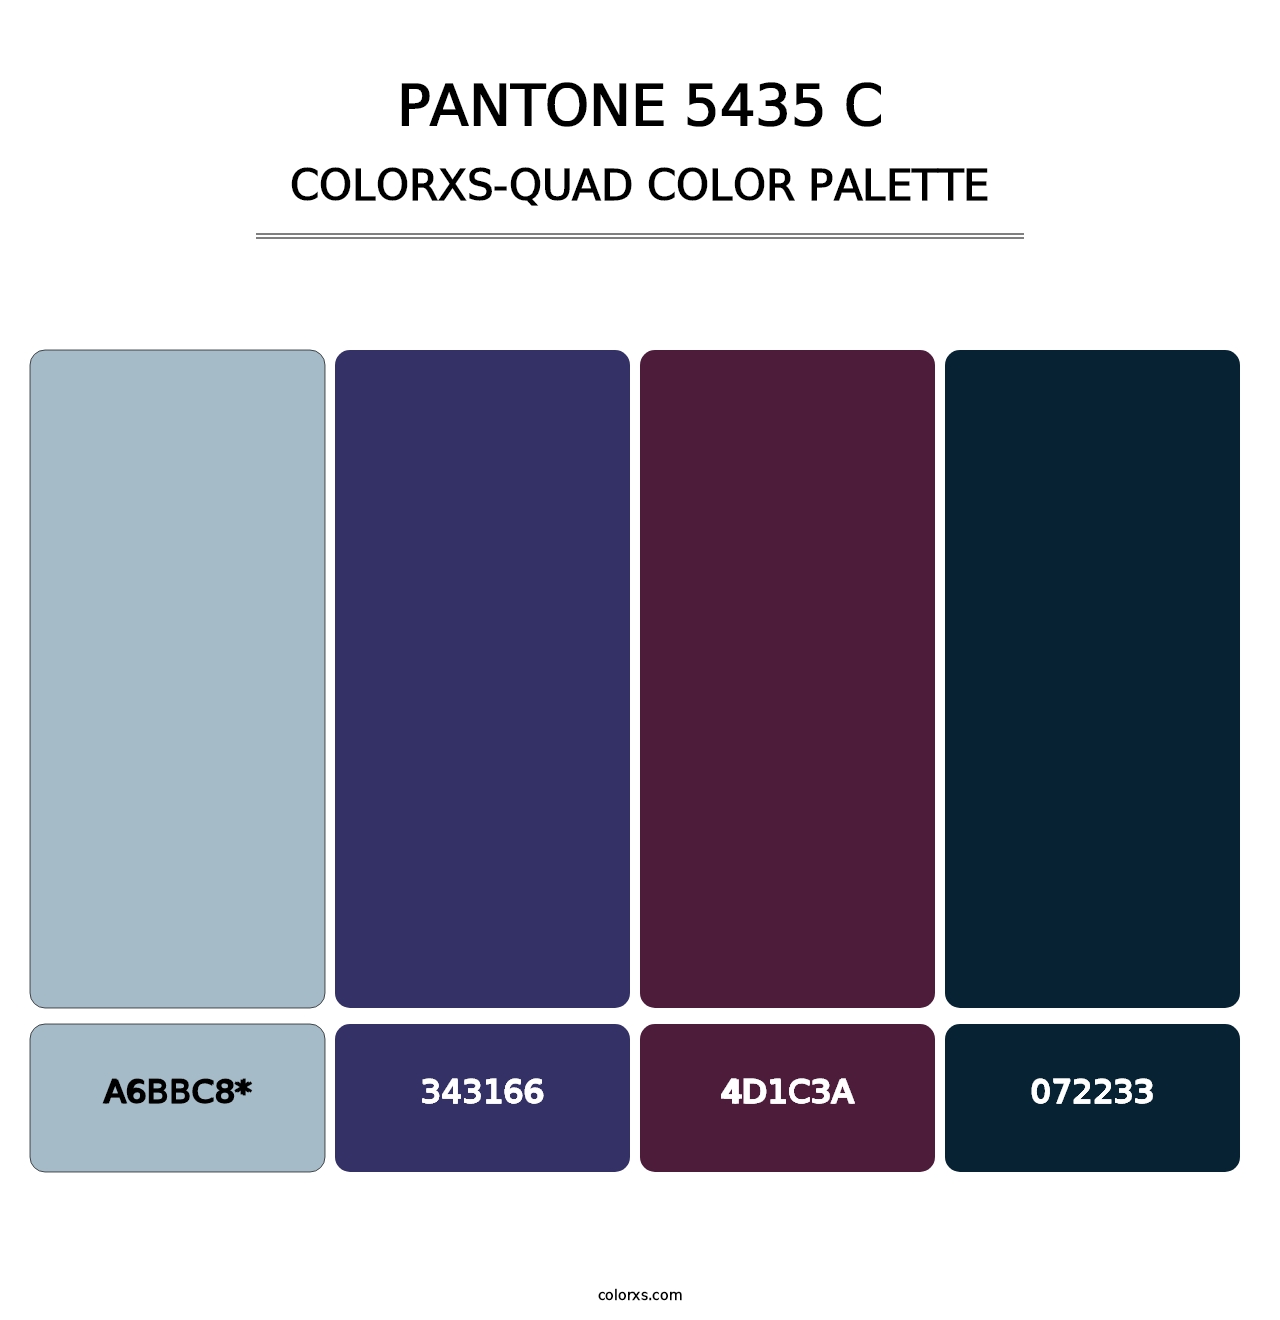 PANTONE 5435 C - Colorxs Quad Palette